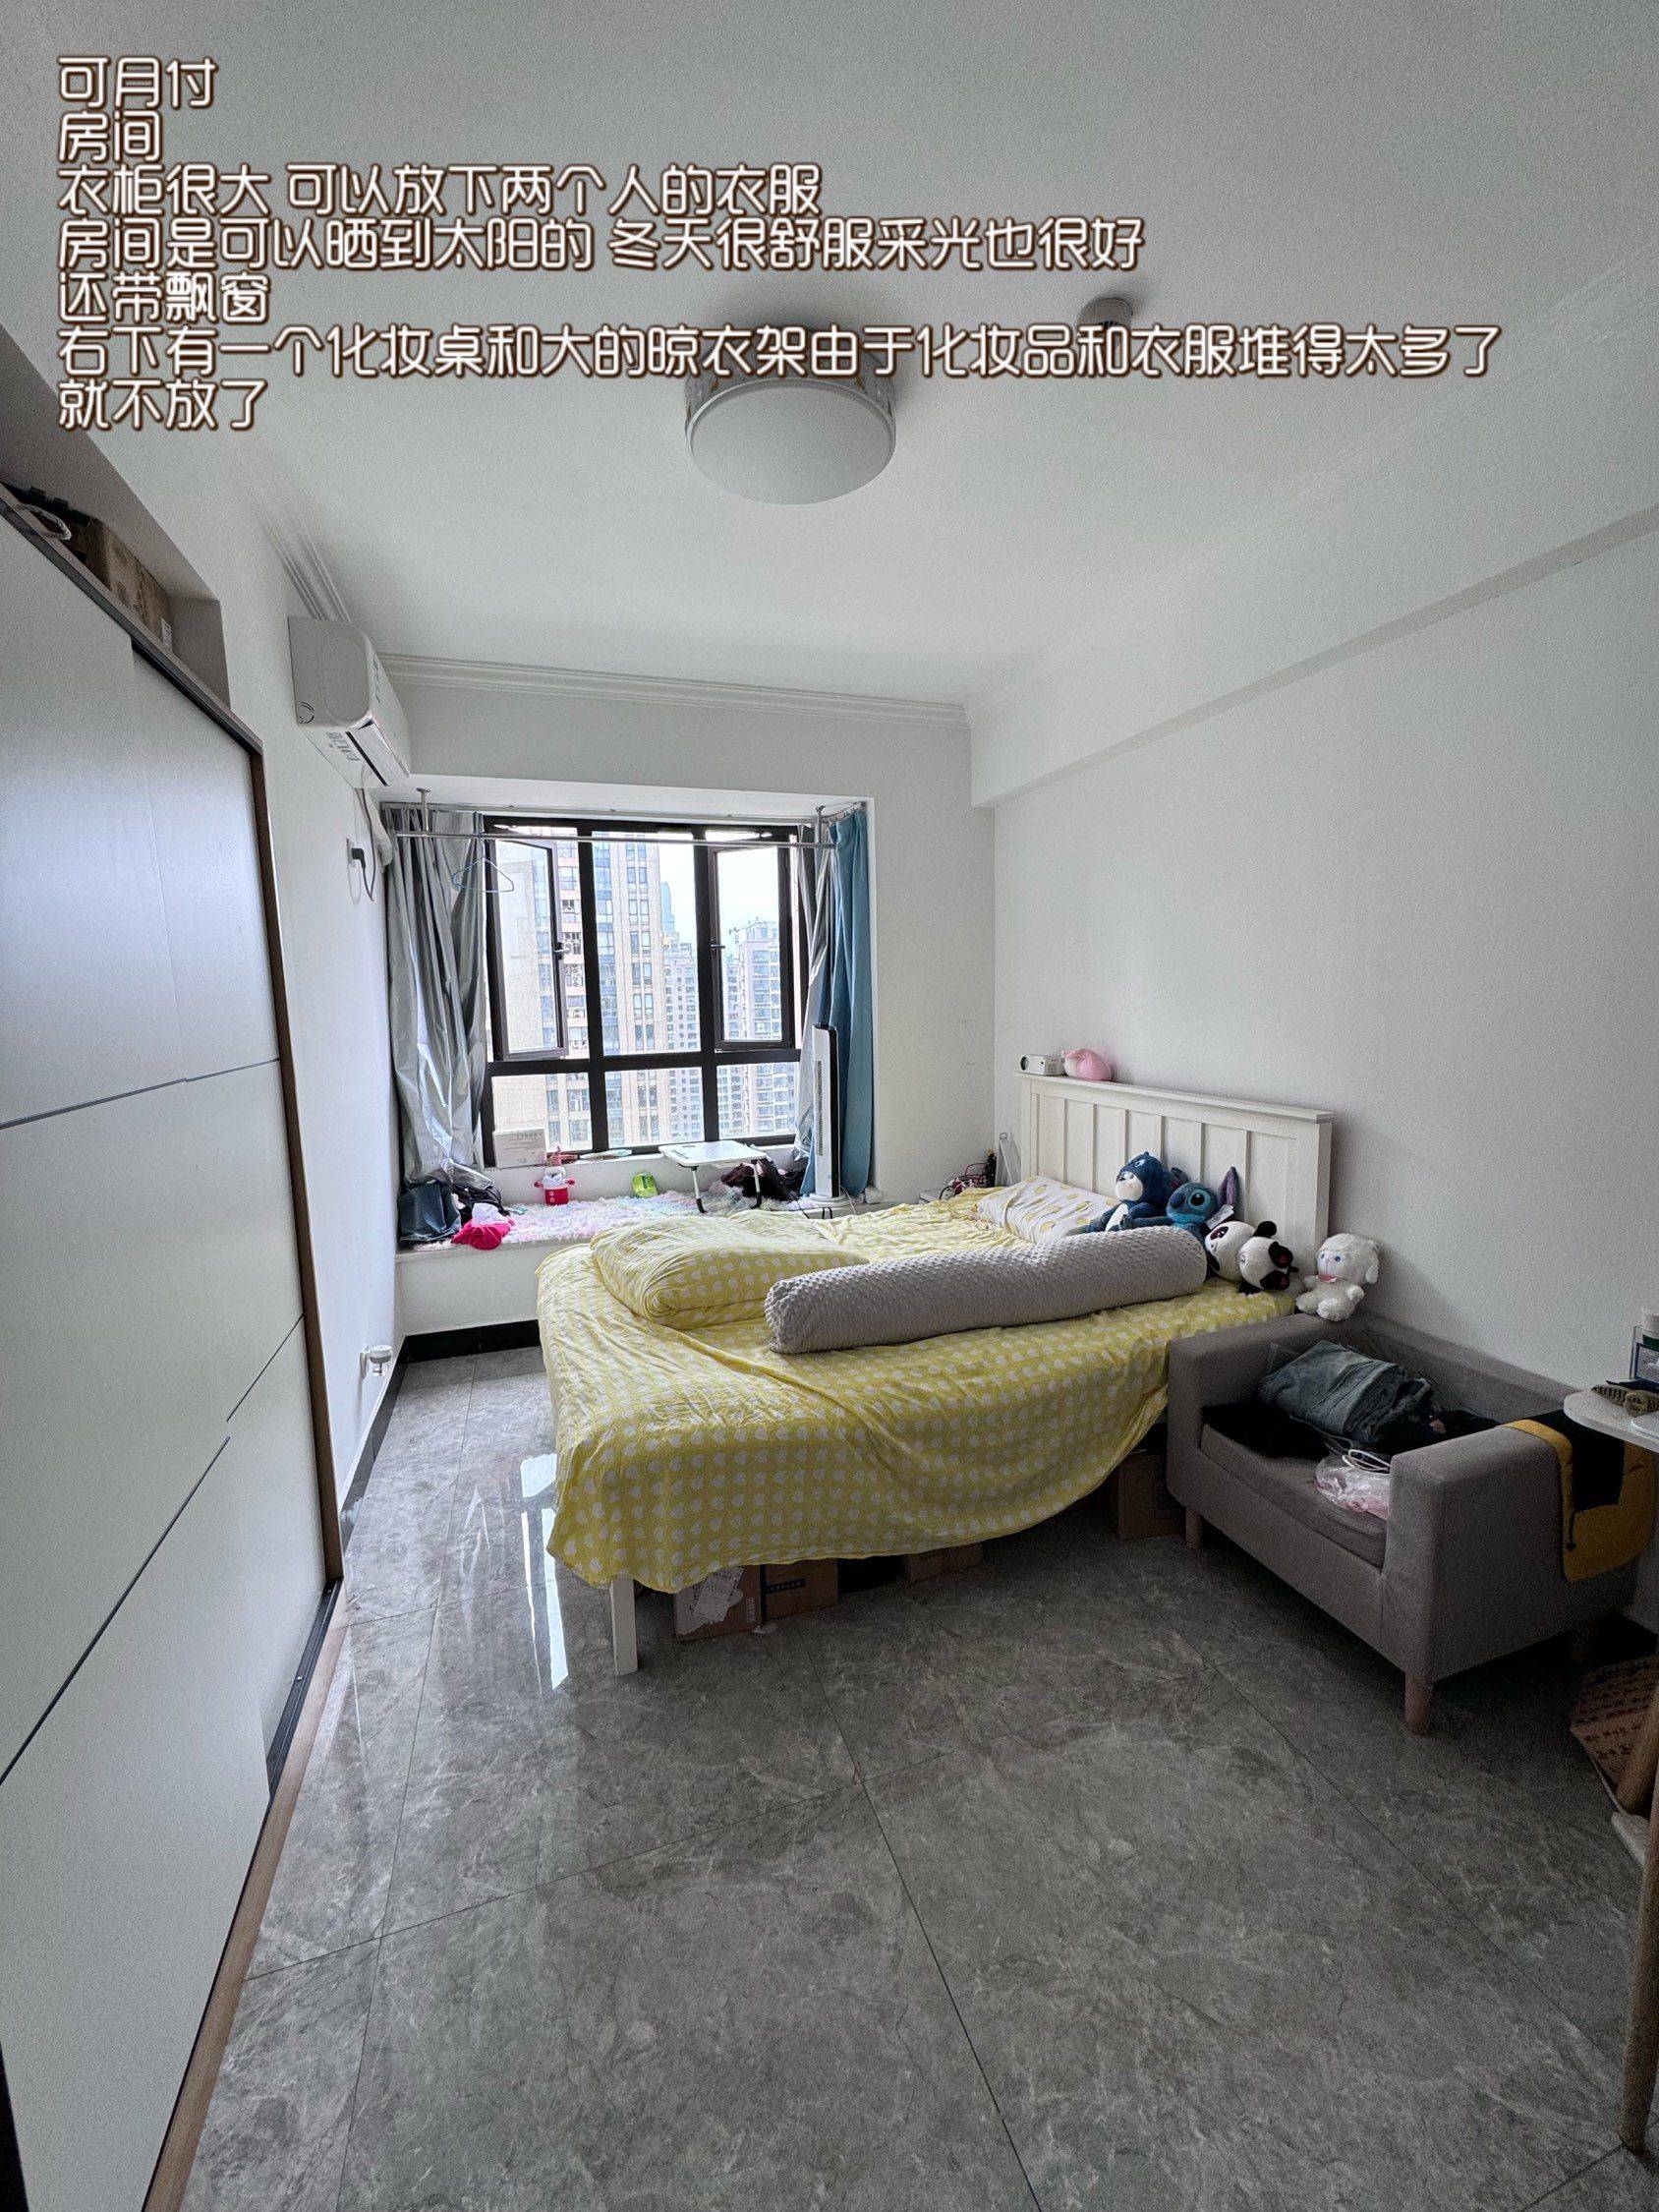 Hangzhou-Xiaoshan-Cozy Home,Clean&Comfy,Chilled